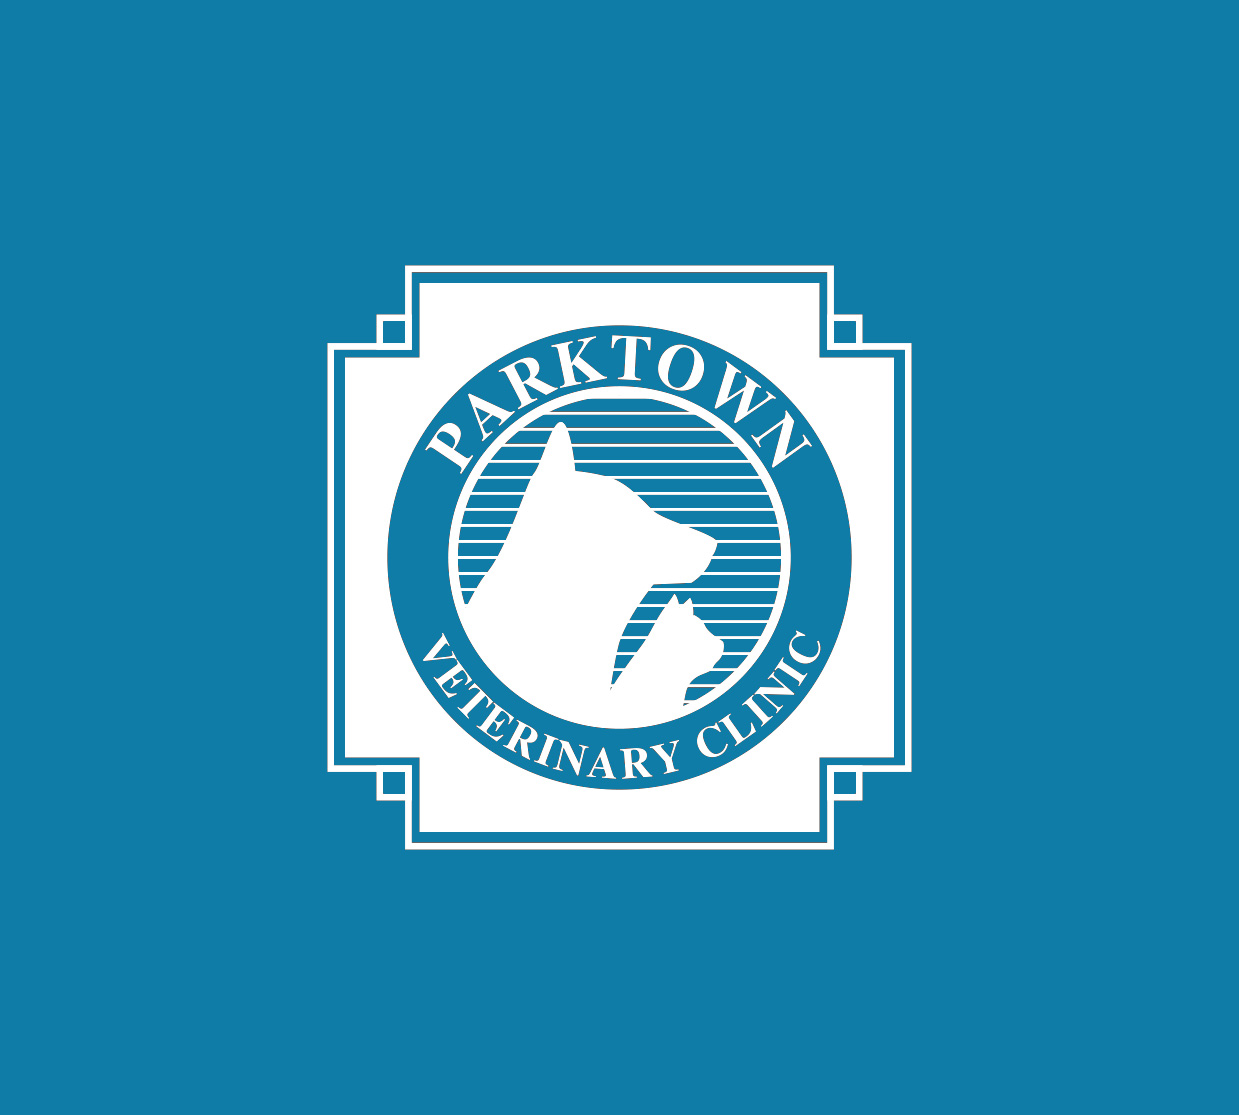 parktown-logo